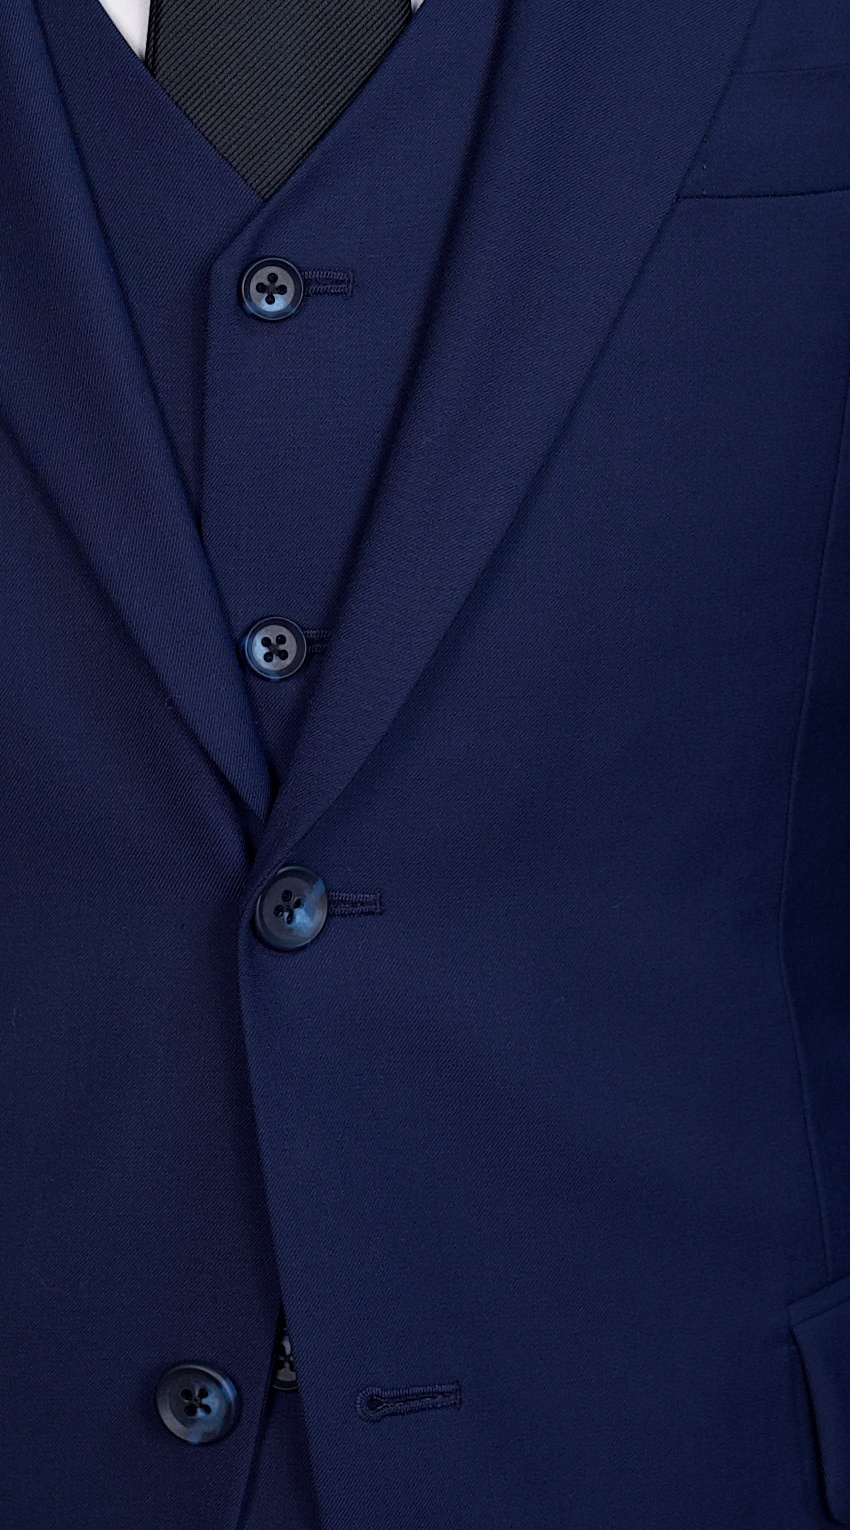 Berry Blue Suit